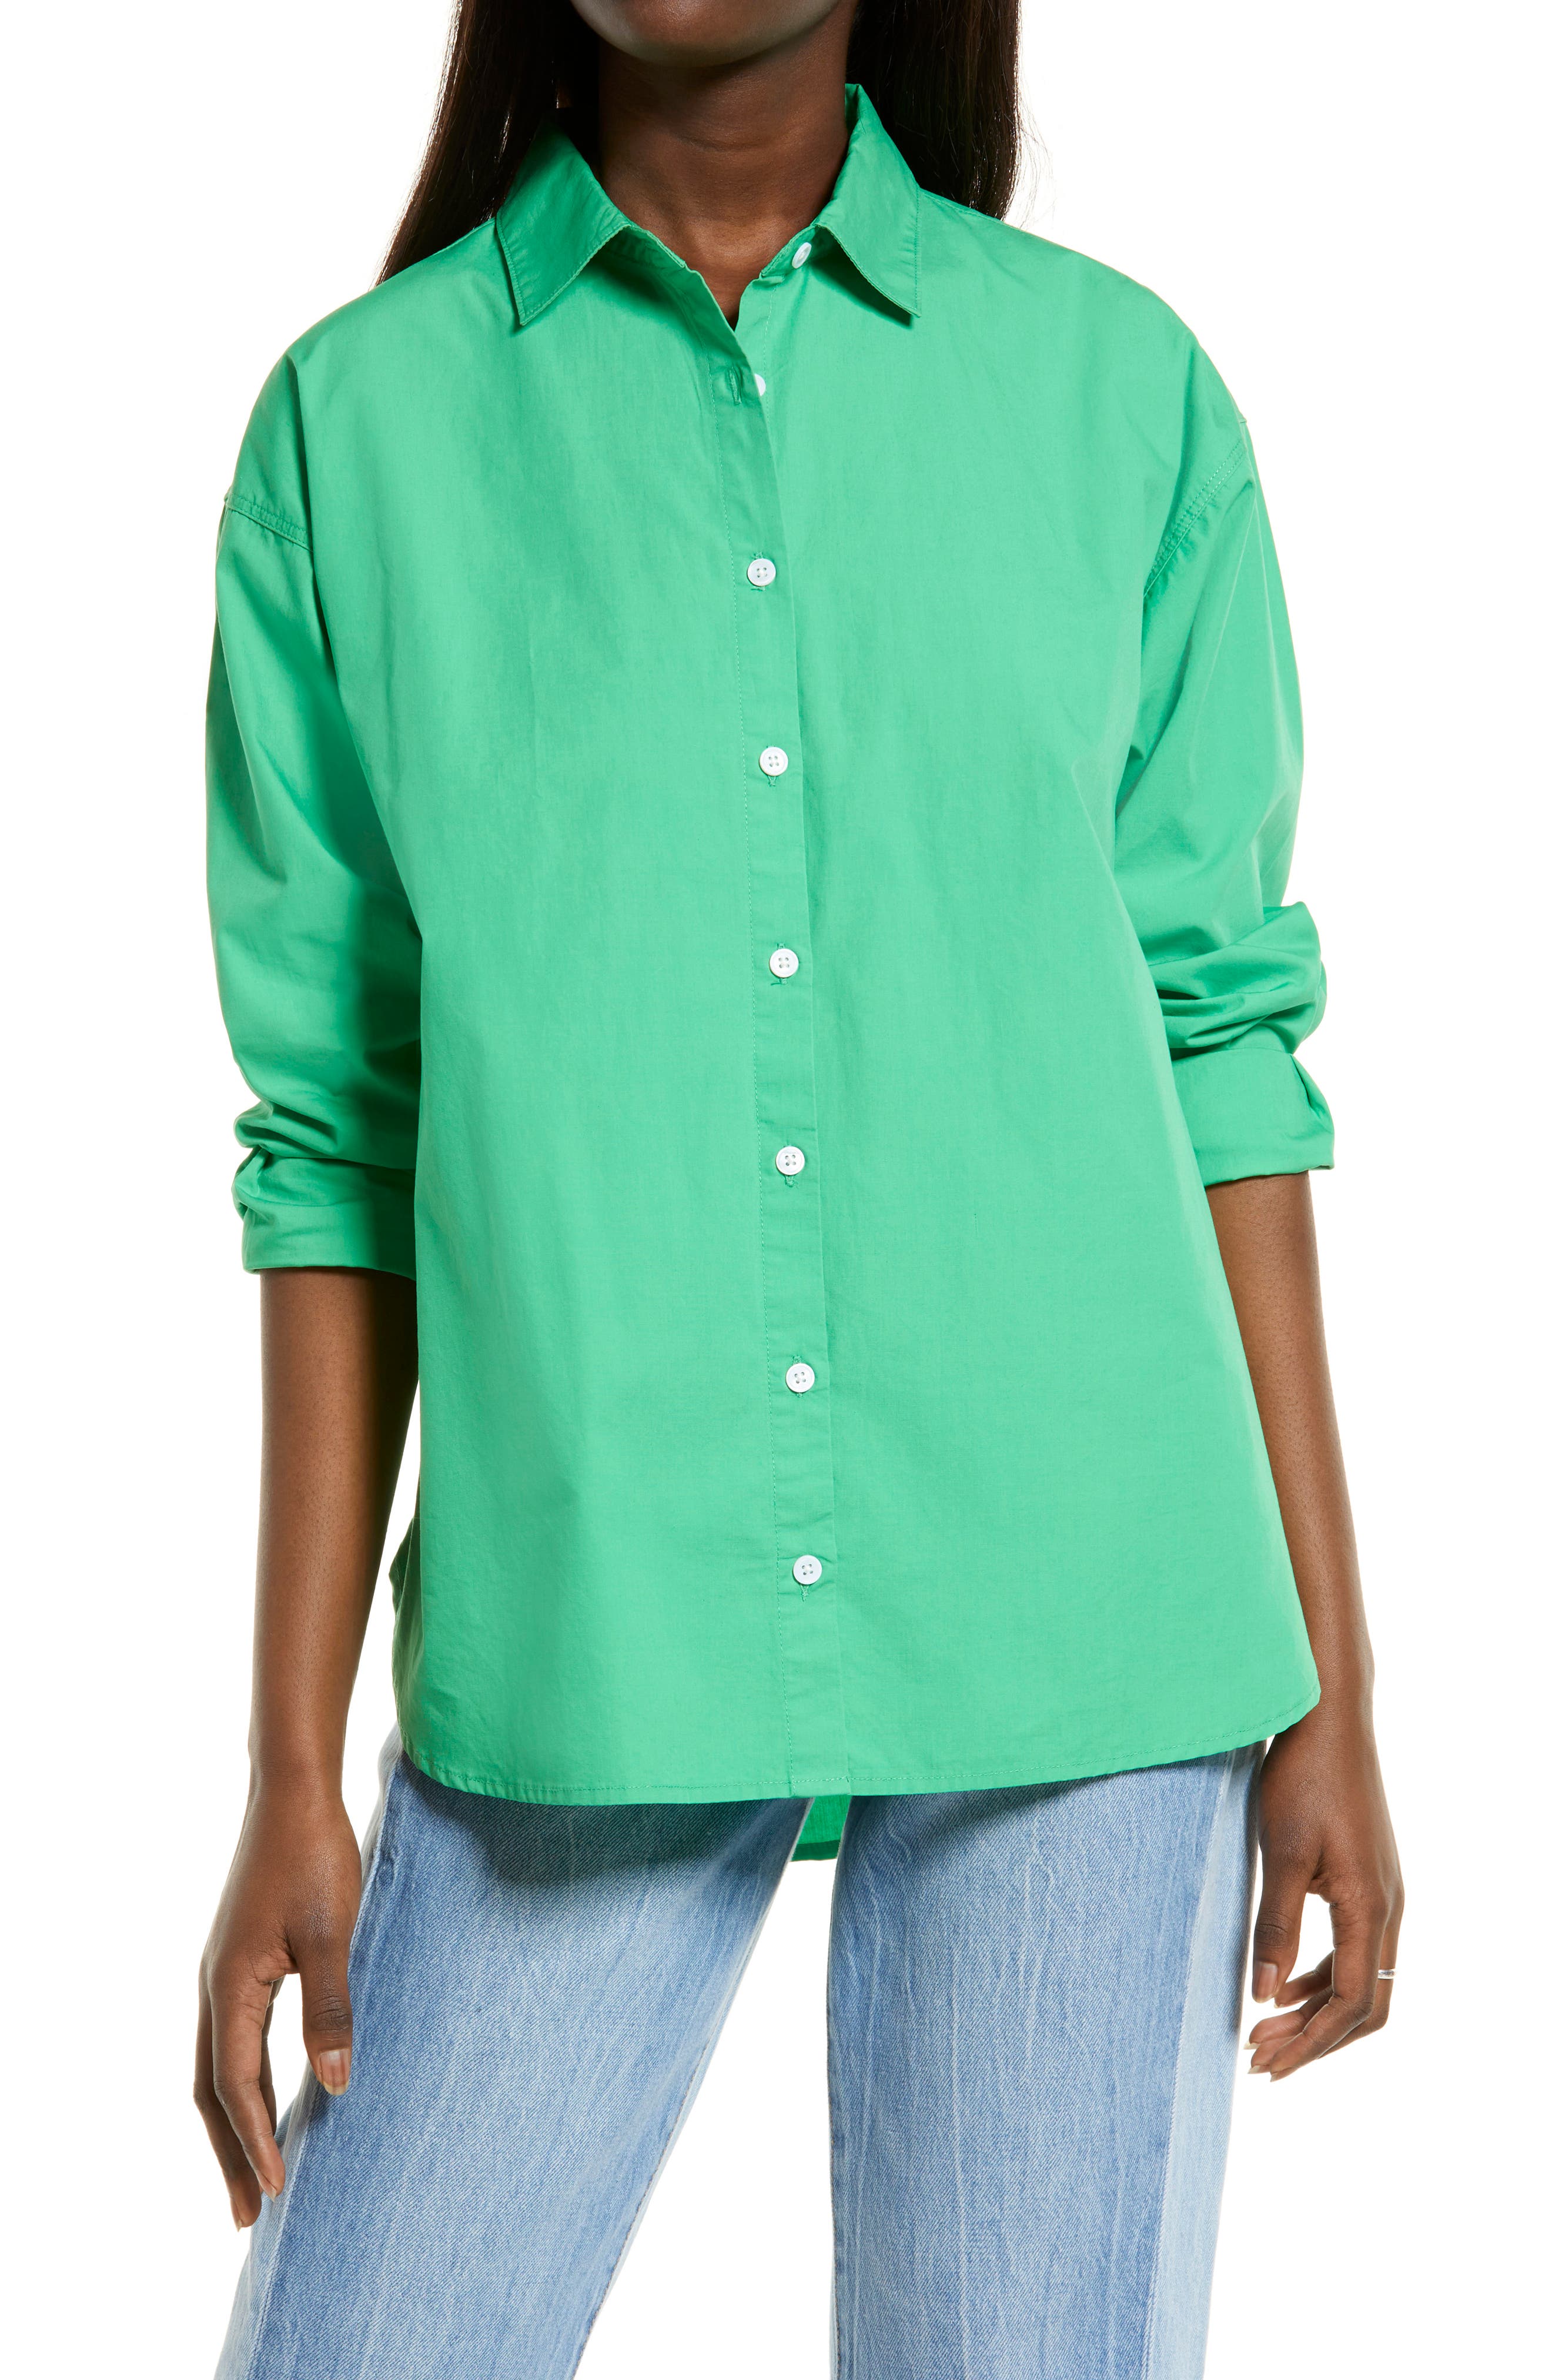 women's green button up shirt